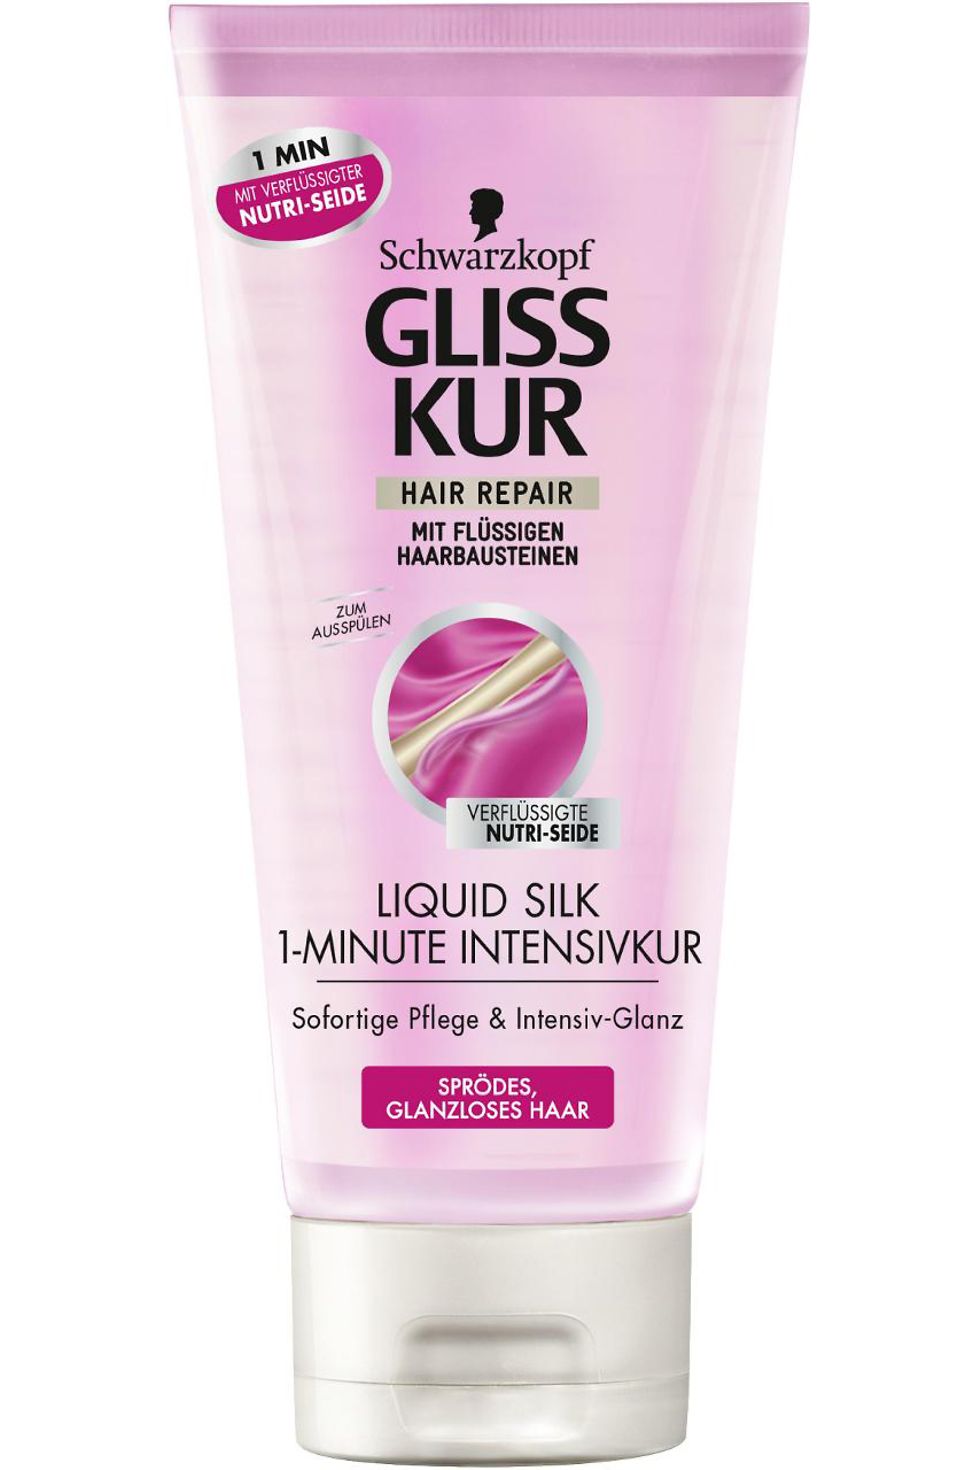 Gliss Kur Liquid Silk 1-Minute Intensivkur